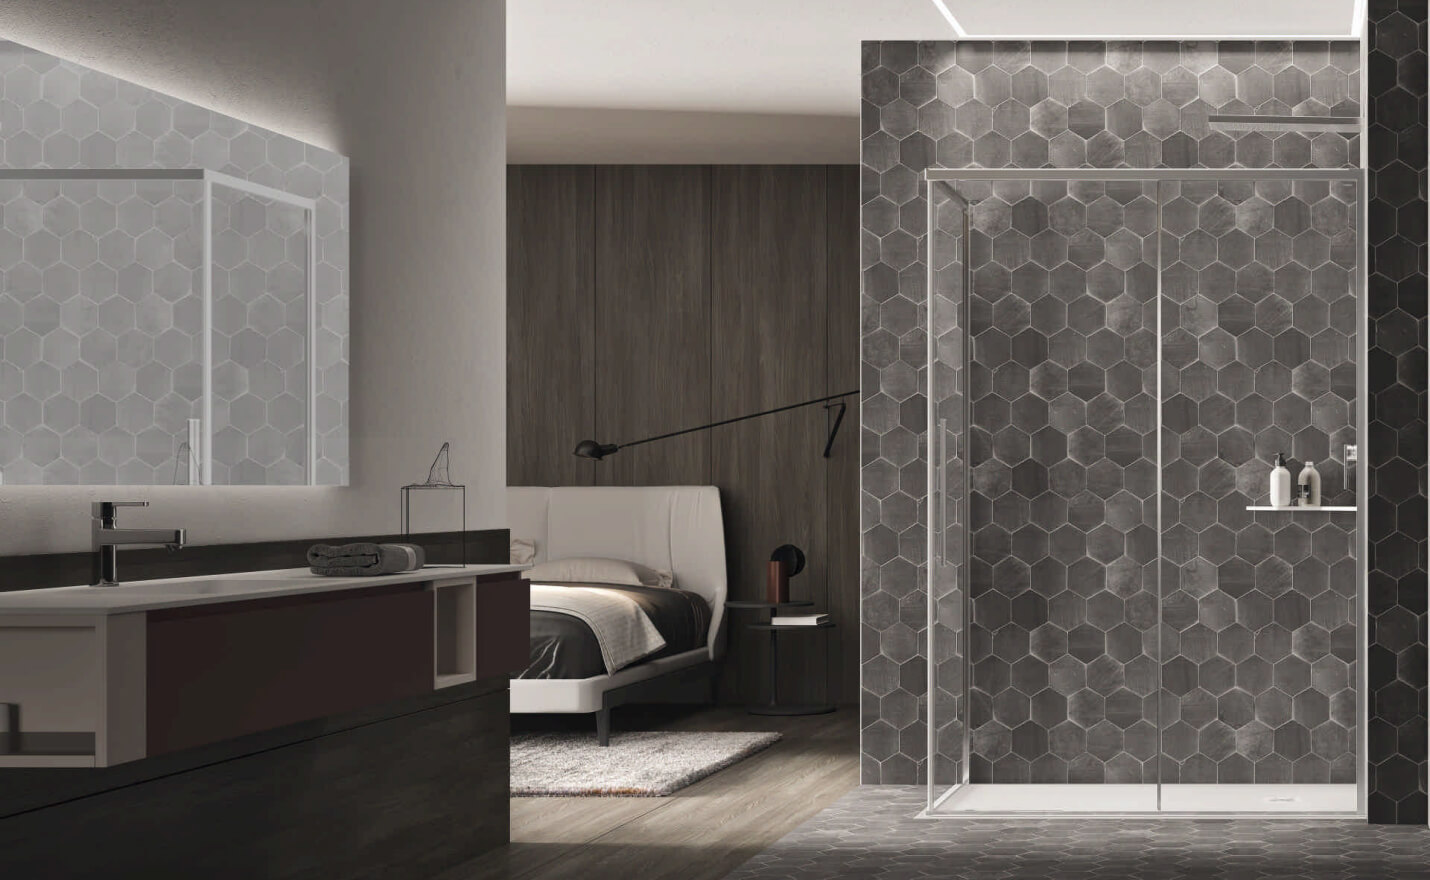 Cabina doccia industriale con profili minimal color alluminio brillantato e vetro trasparente. Situata all'interno della camera da letto